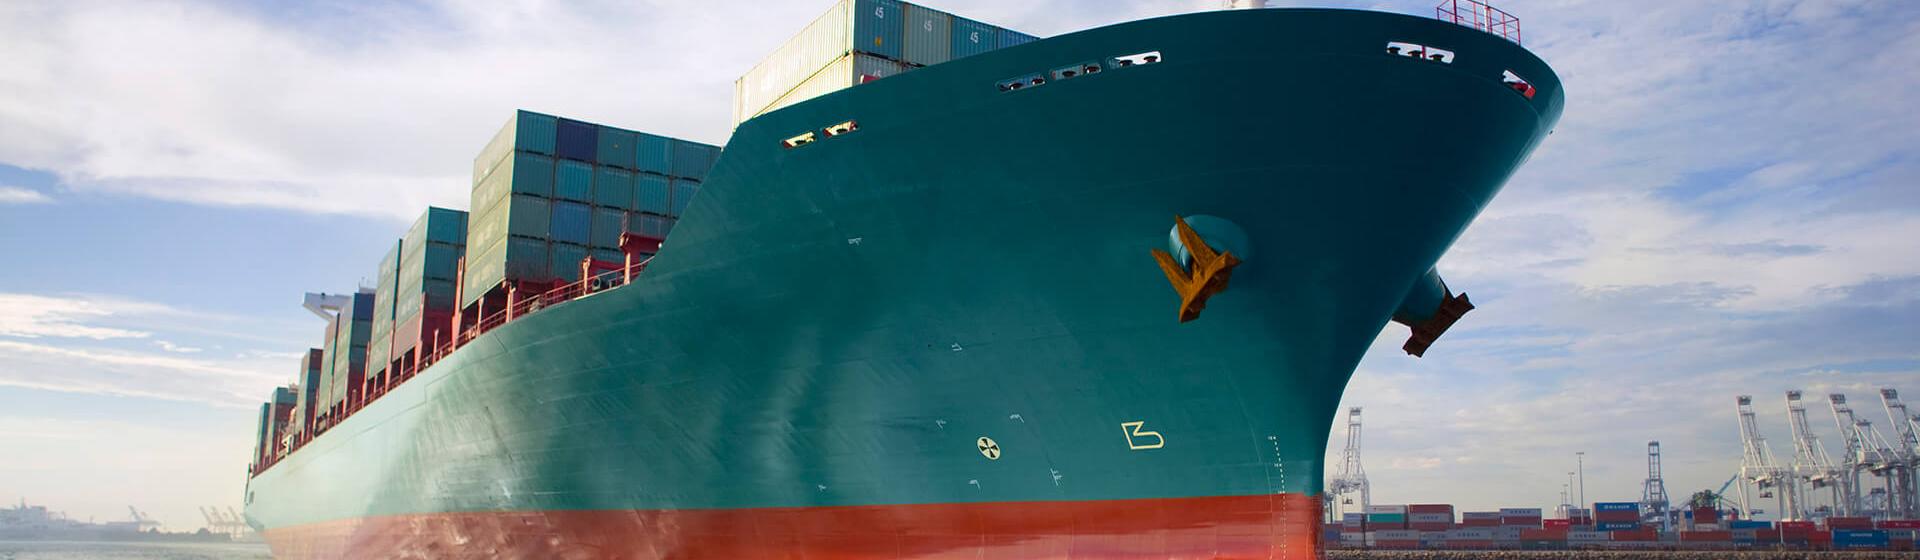 ένα πλοίο με εμπορευματοκιβώτια που κινείται μέσα σε ένα λιμάνι με γερανούς στο βάθος, όπως φαίνεται από το επίπεδο της θάλασσας.